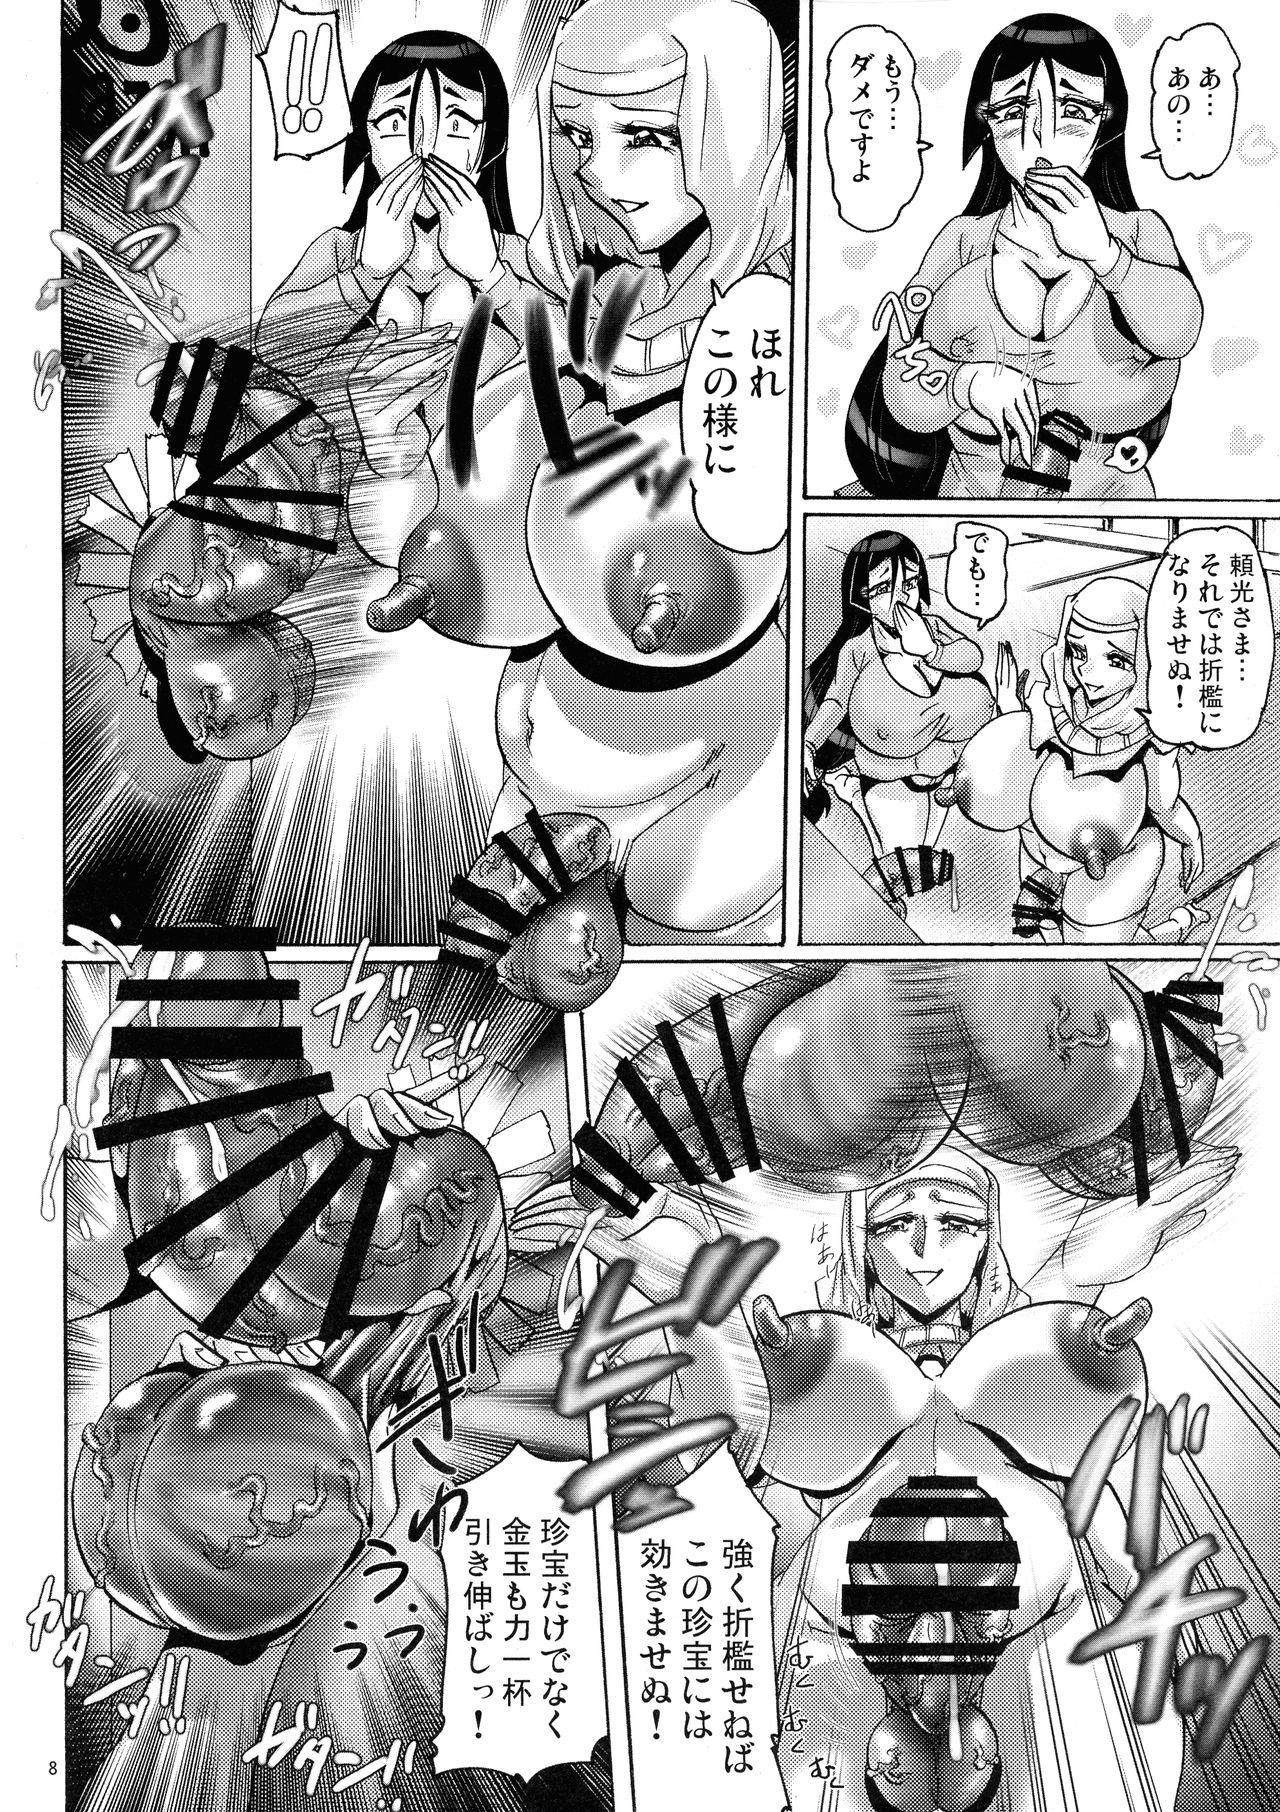 Big Shin Hanzyuuryoku 40 - Fate grand order Buceta - Page 8